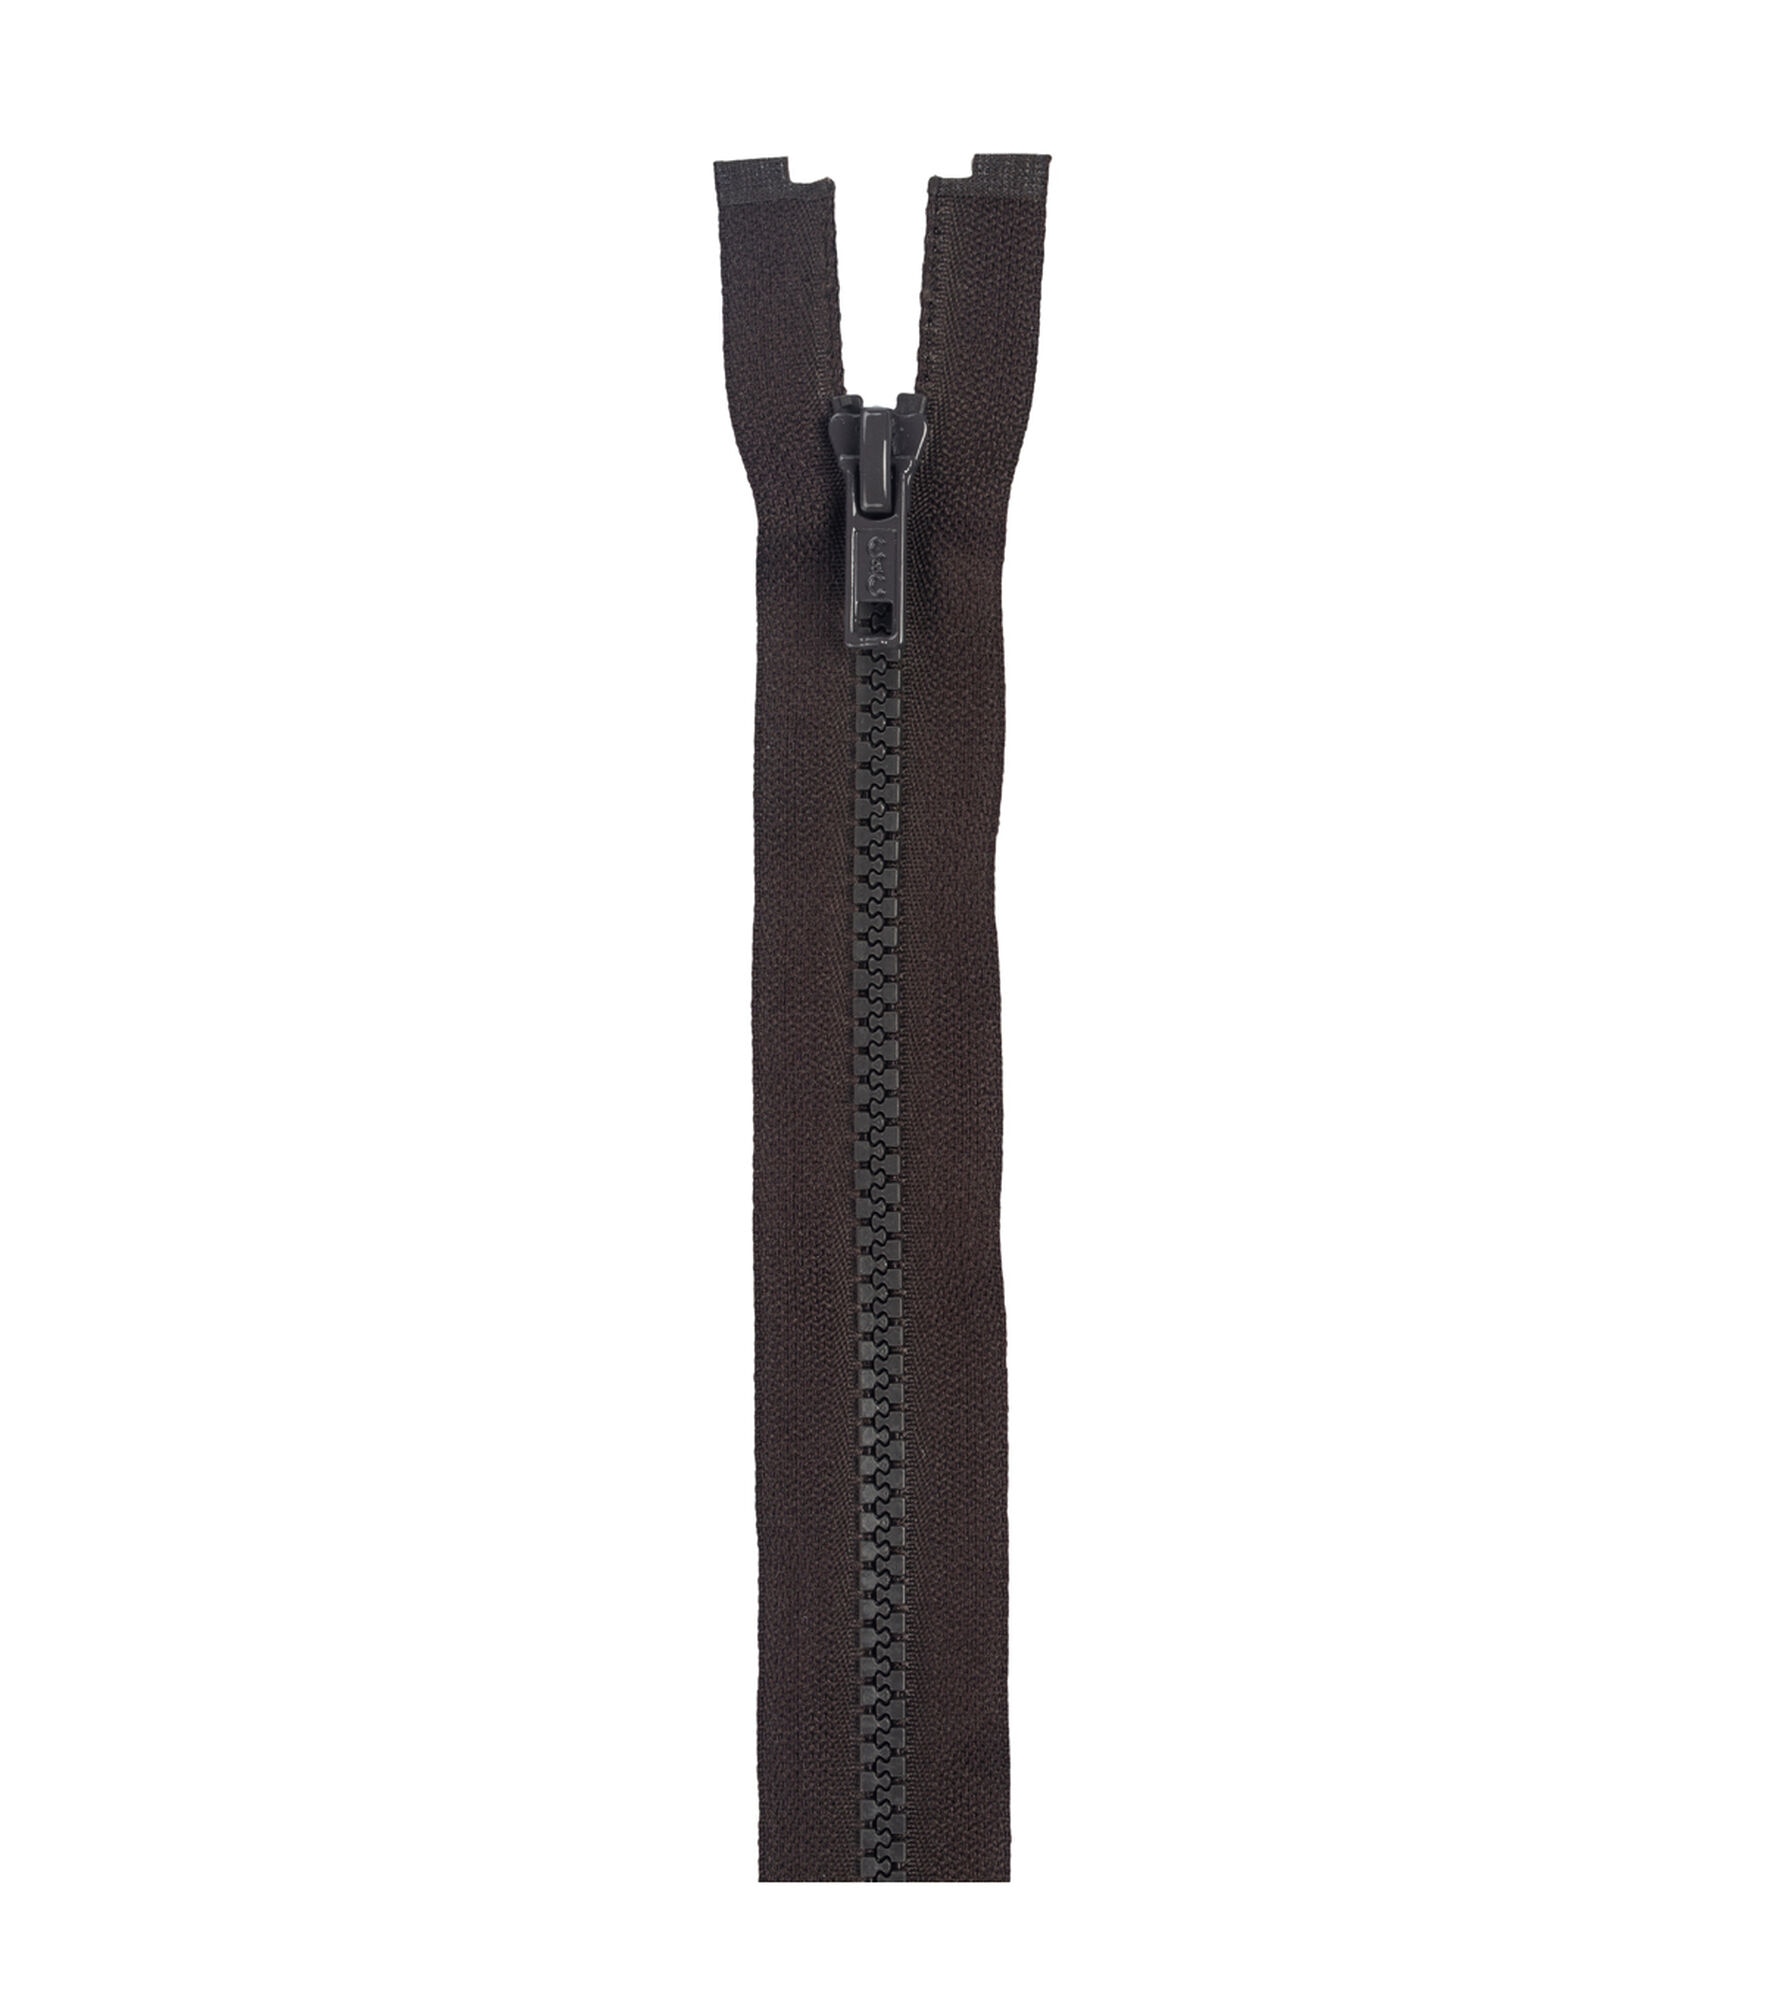 Coats & Clark 26'' Molded Separating Sport Zipper, Brown, hi-res